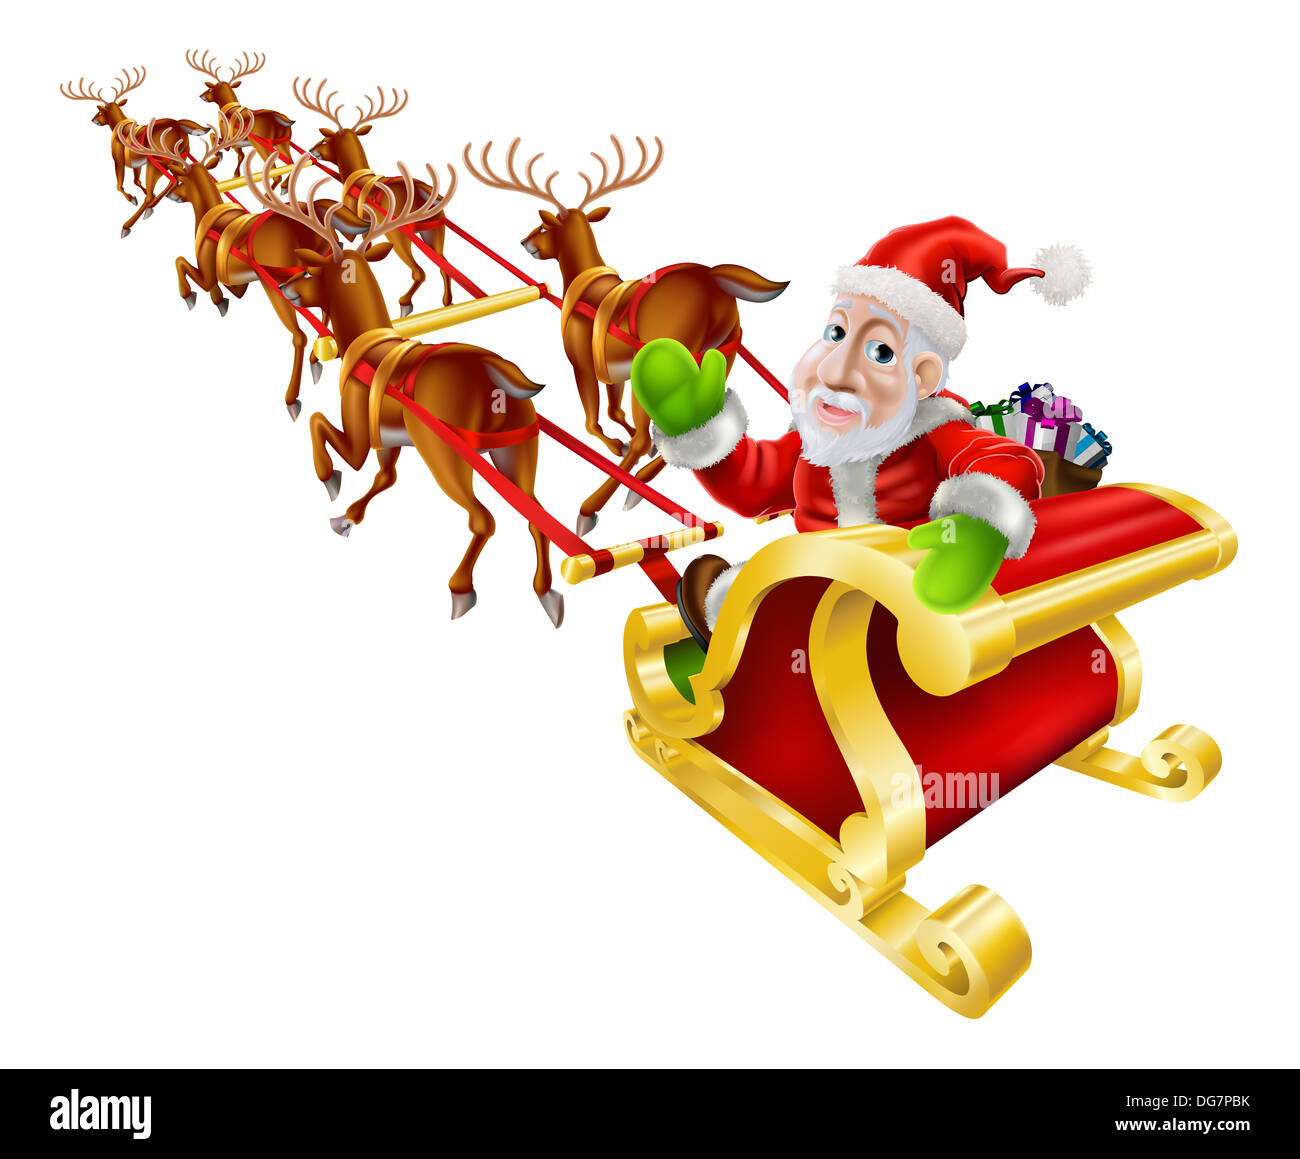 Cartoon Weihnachten Illustration der Weihnachtsmann in seinem Schlitten oder Schlitten mit Rentier und eine Plünderung von Weihnachtsgeschenken fliegen Stockfoto